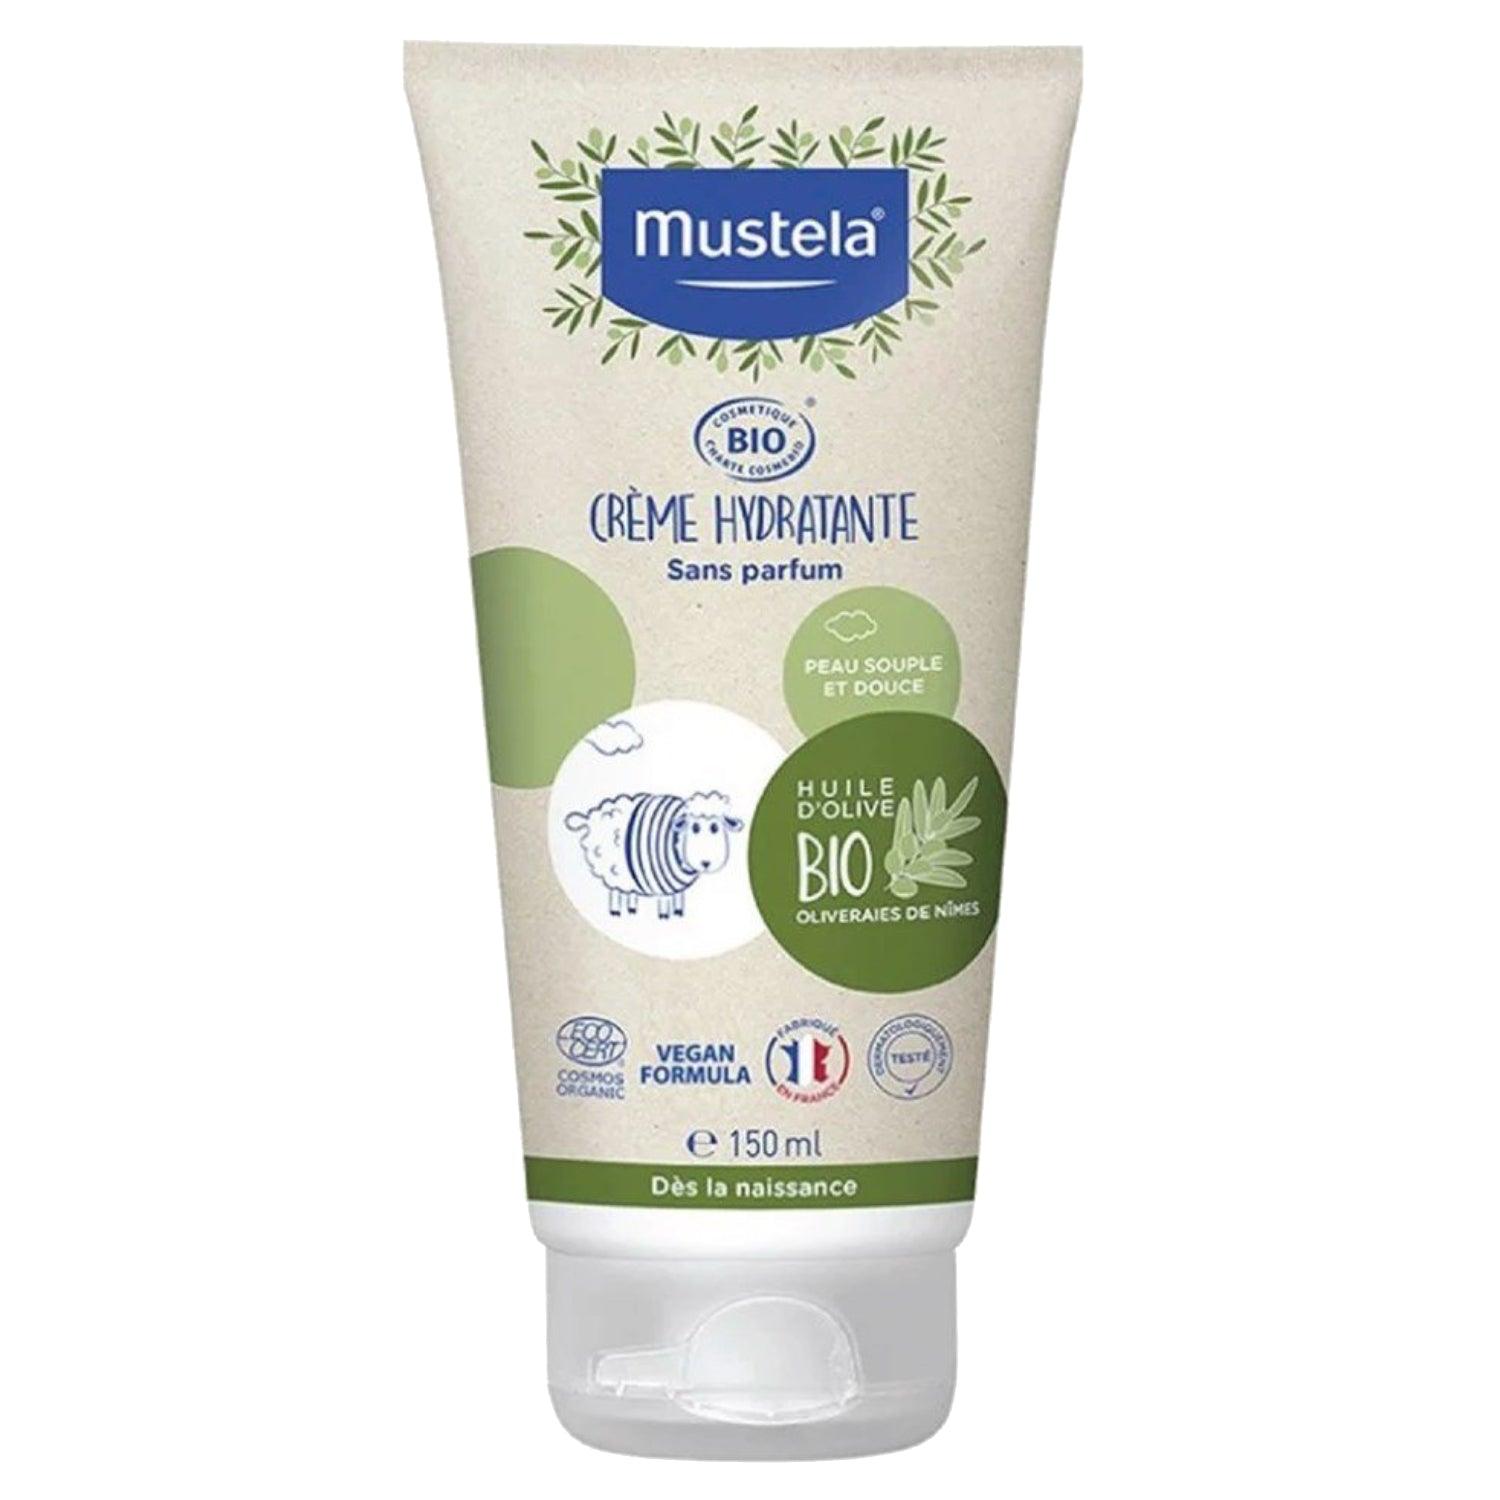 Mustela Bio Organic Hydrating Cream 150ml - Wellness Shoppee